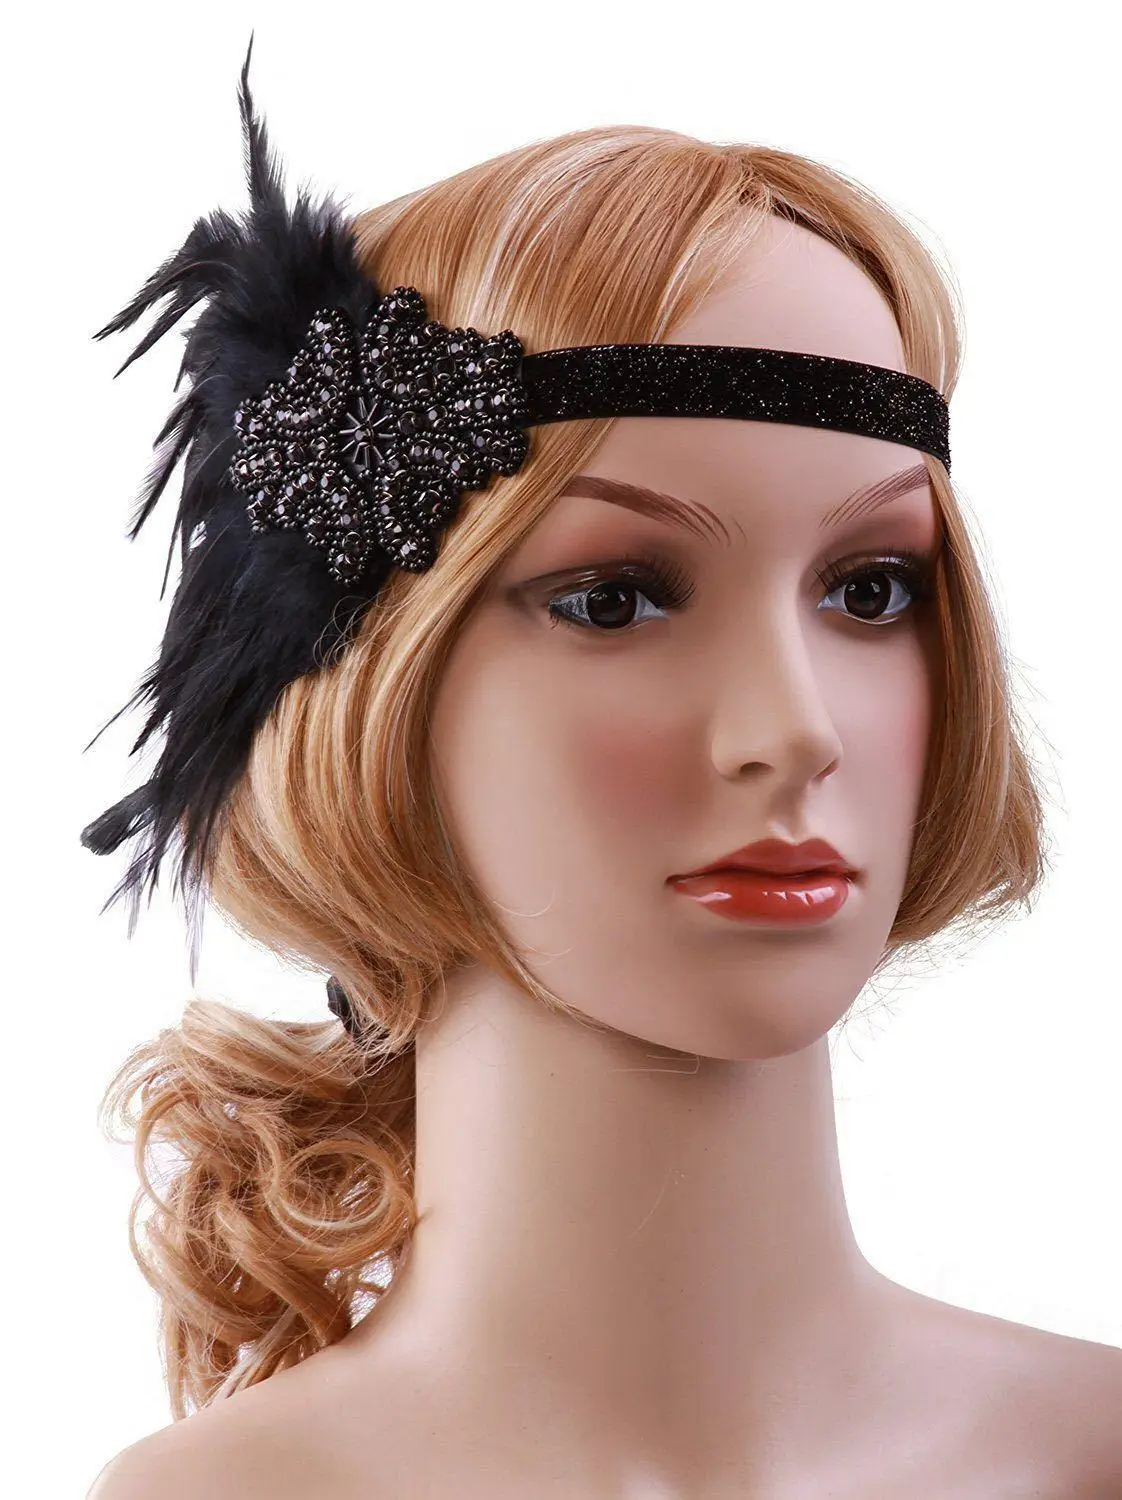 1920s Great Gatsby аксессуар к костюму для вечеринки набор Хлопушка повязка на голову с перьями жемчужное ожерелье перчатки держатель для сигарет браслет 5 шт набор